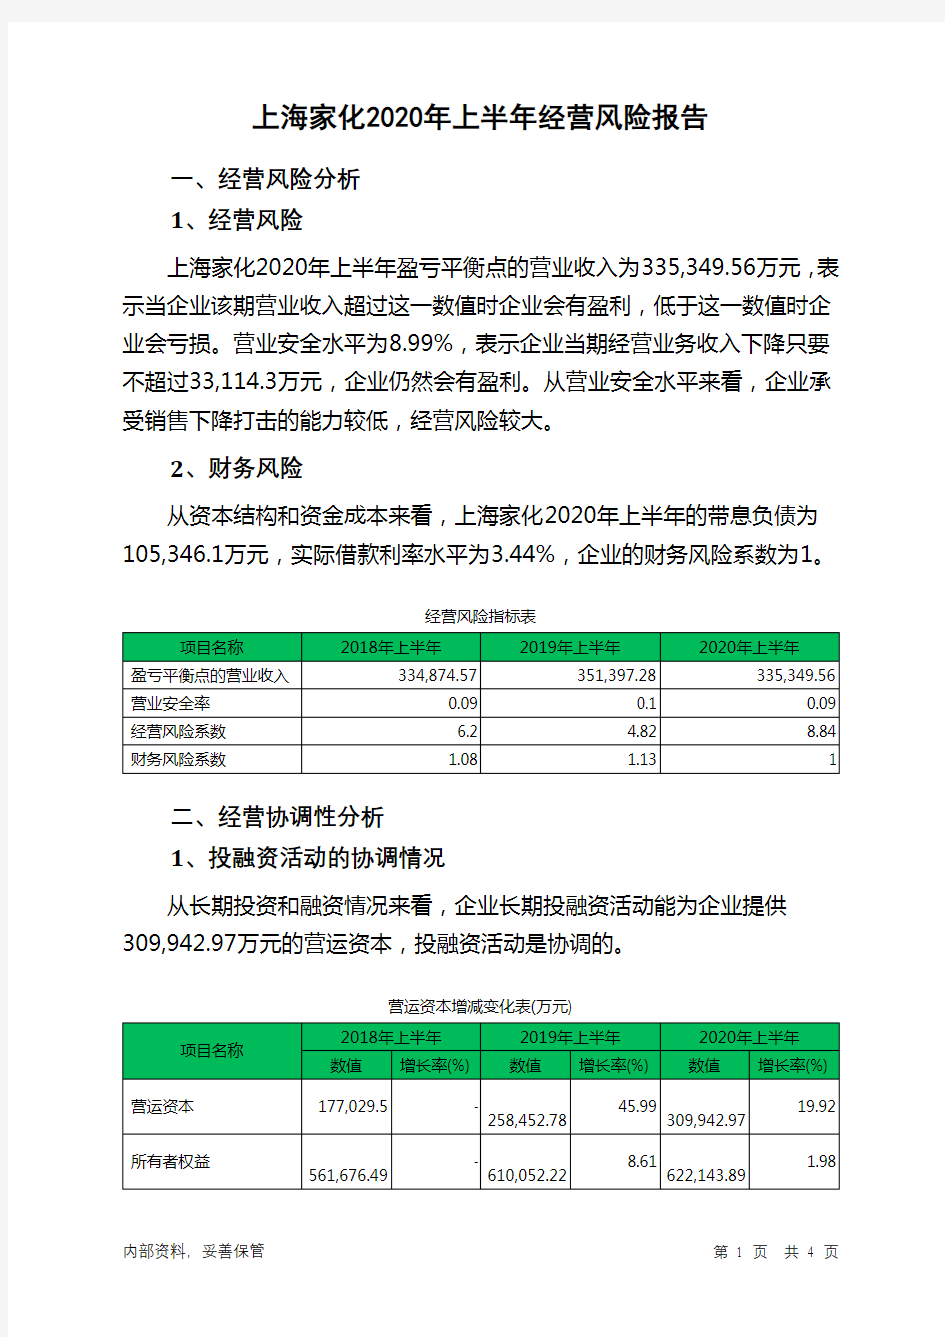 上海家化2020年上半年经营风险报告